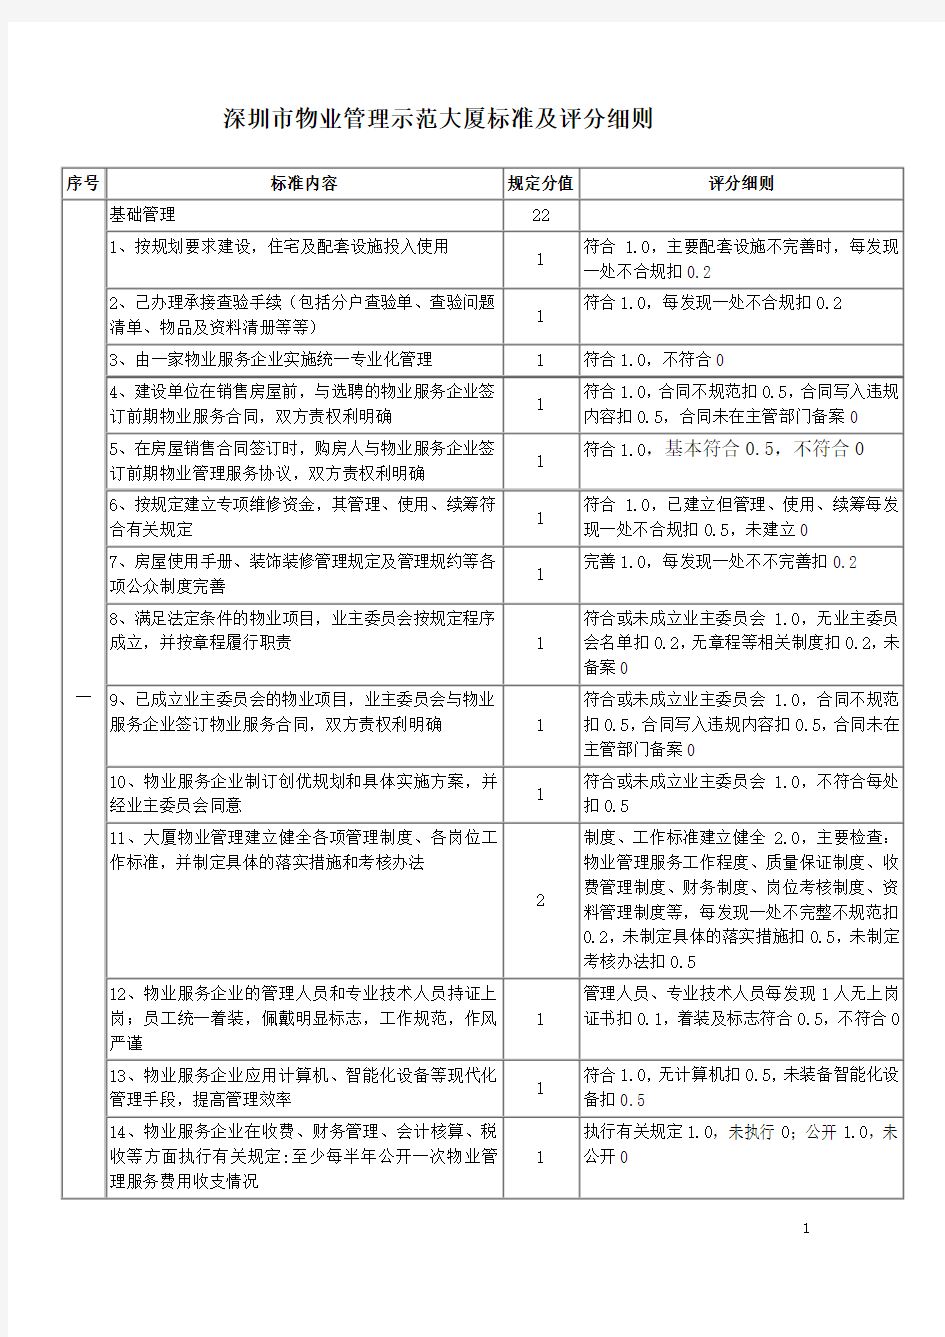 深圳市物业管理示范大厦标准及评分细则(定稿)